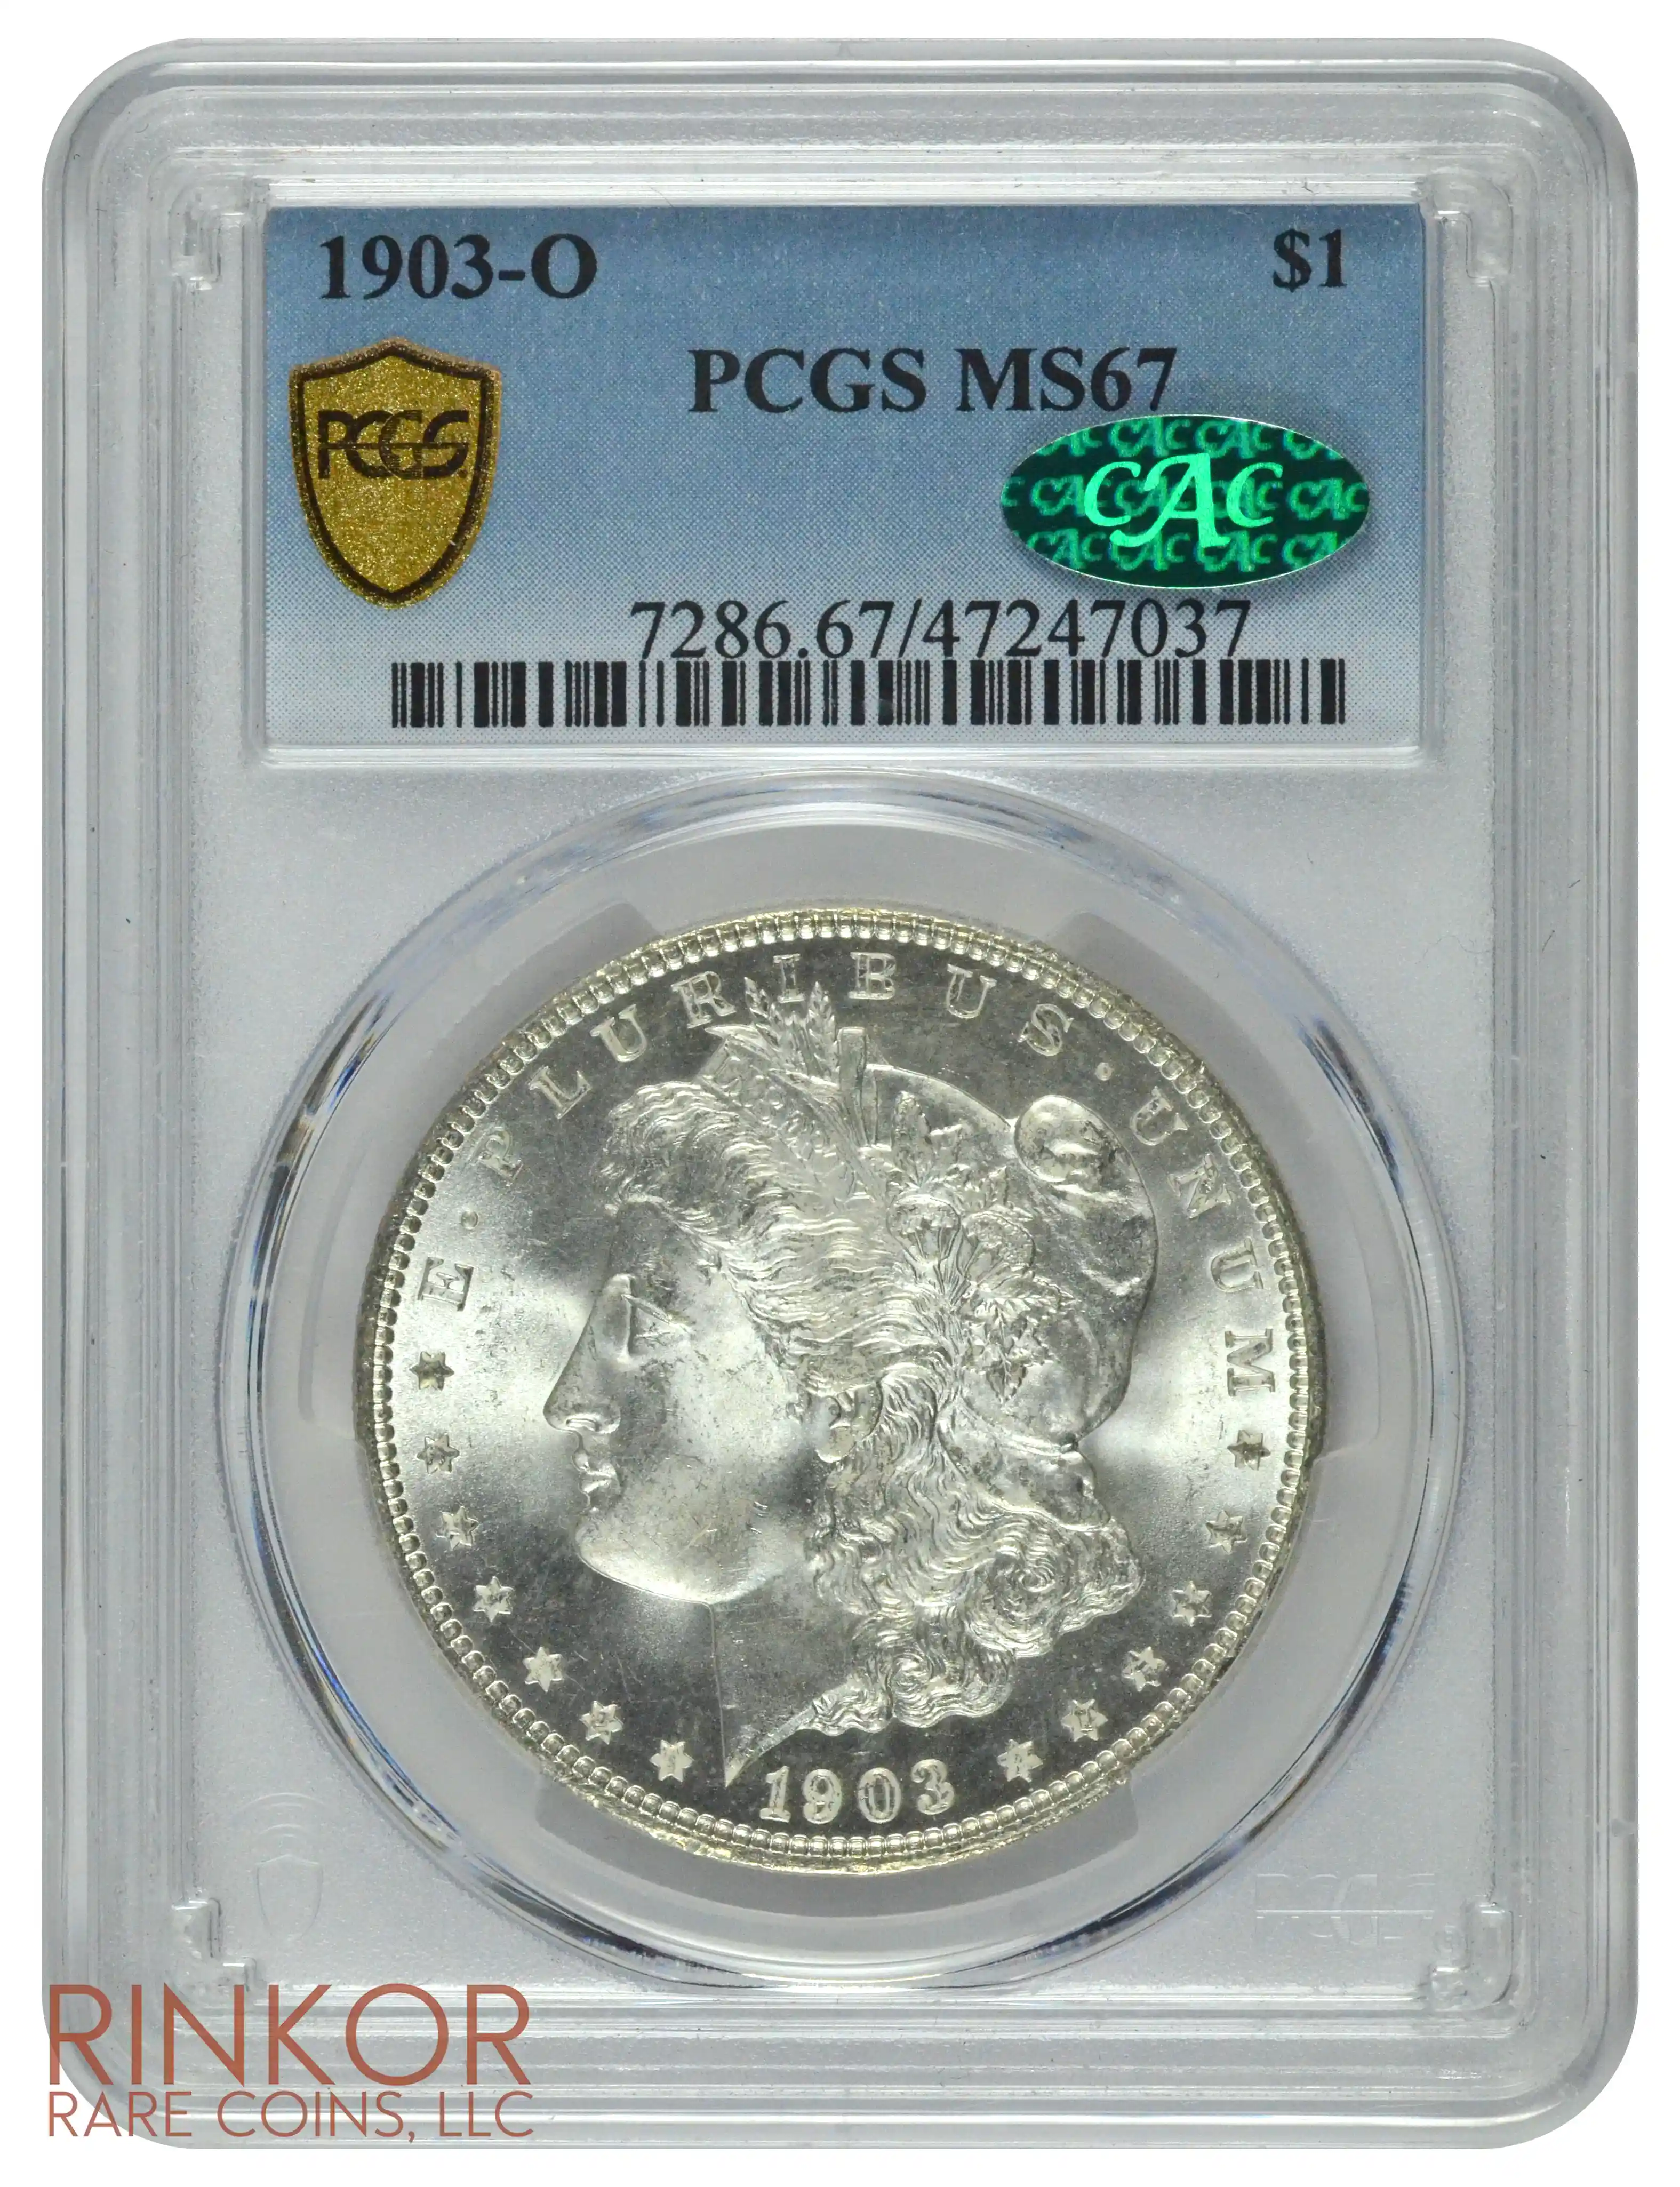 1903-O $1 PCGS MS 67 CAC